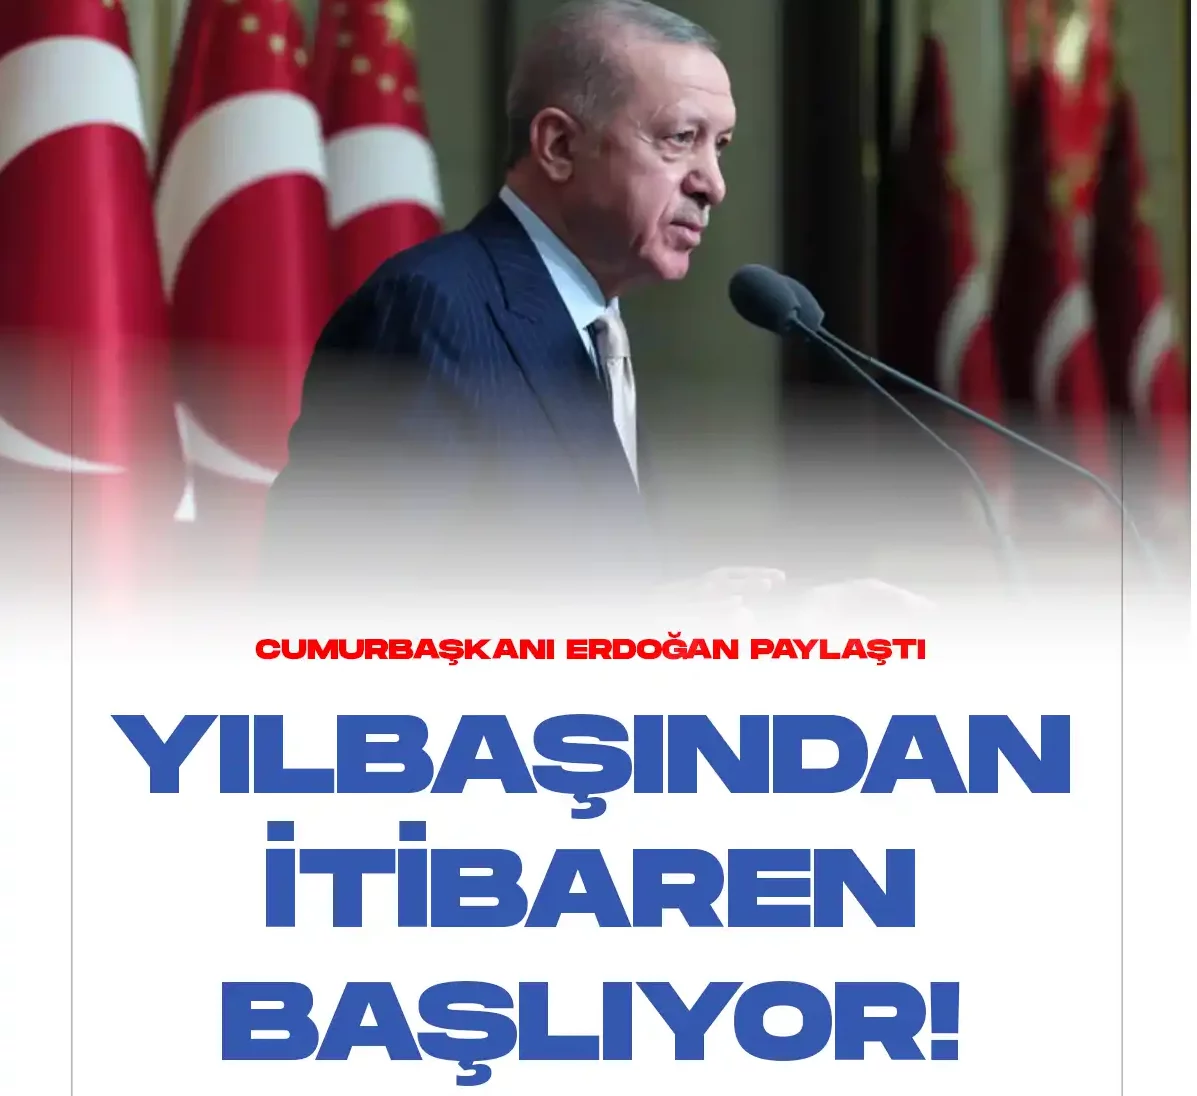 Cumhurbaşkanı Erdoğan, enflasyon ve ekonomideki son gelişmelere ilişkin değerlendirmelerde bulundu.